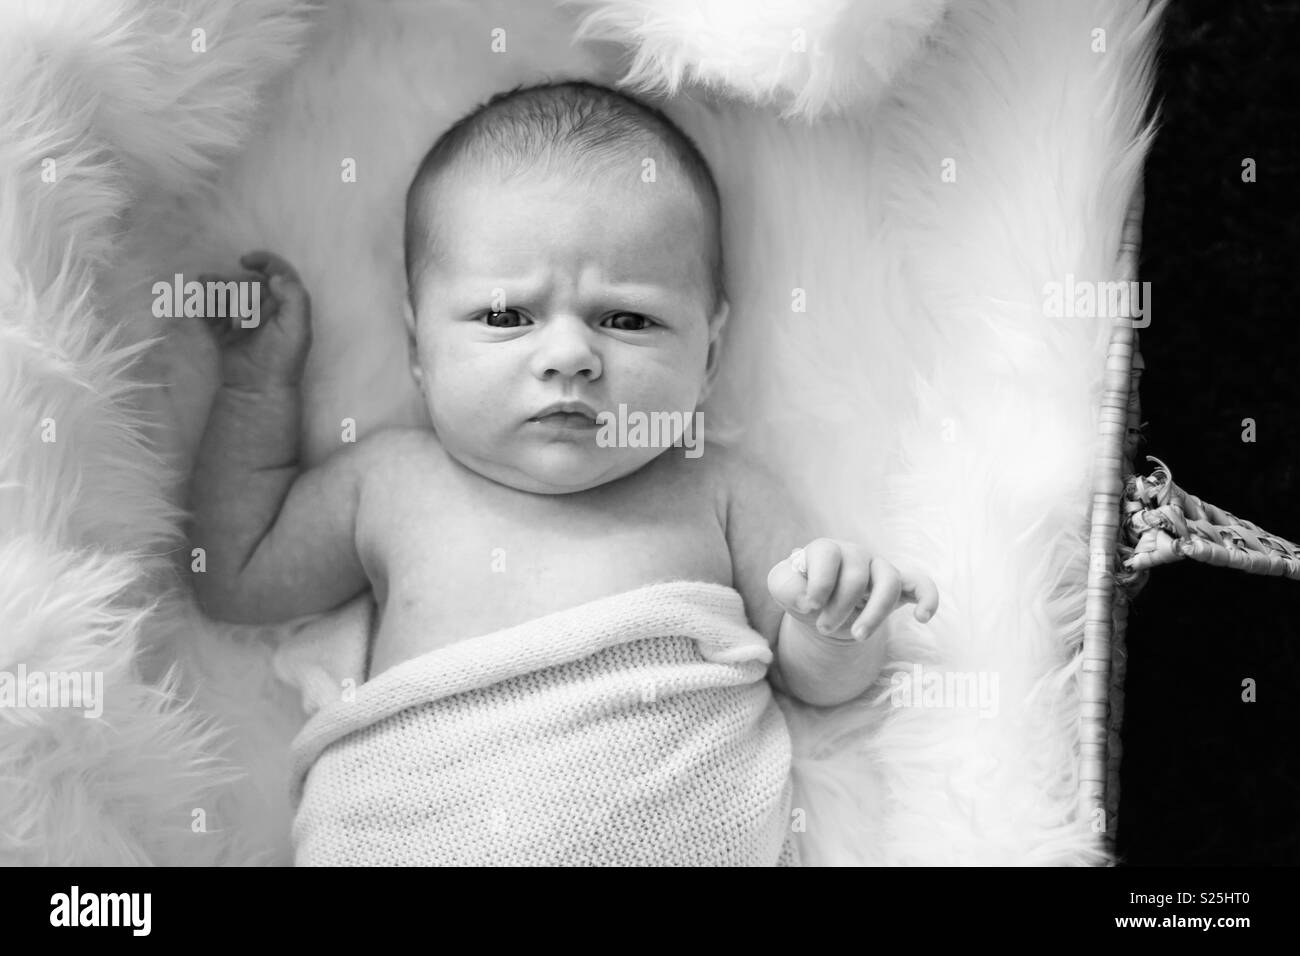 Tout petit bébé noir et blanc éveillé dans un couffin expression drole Banque D'Images